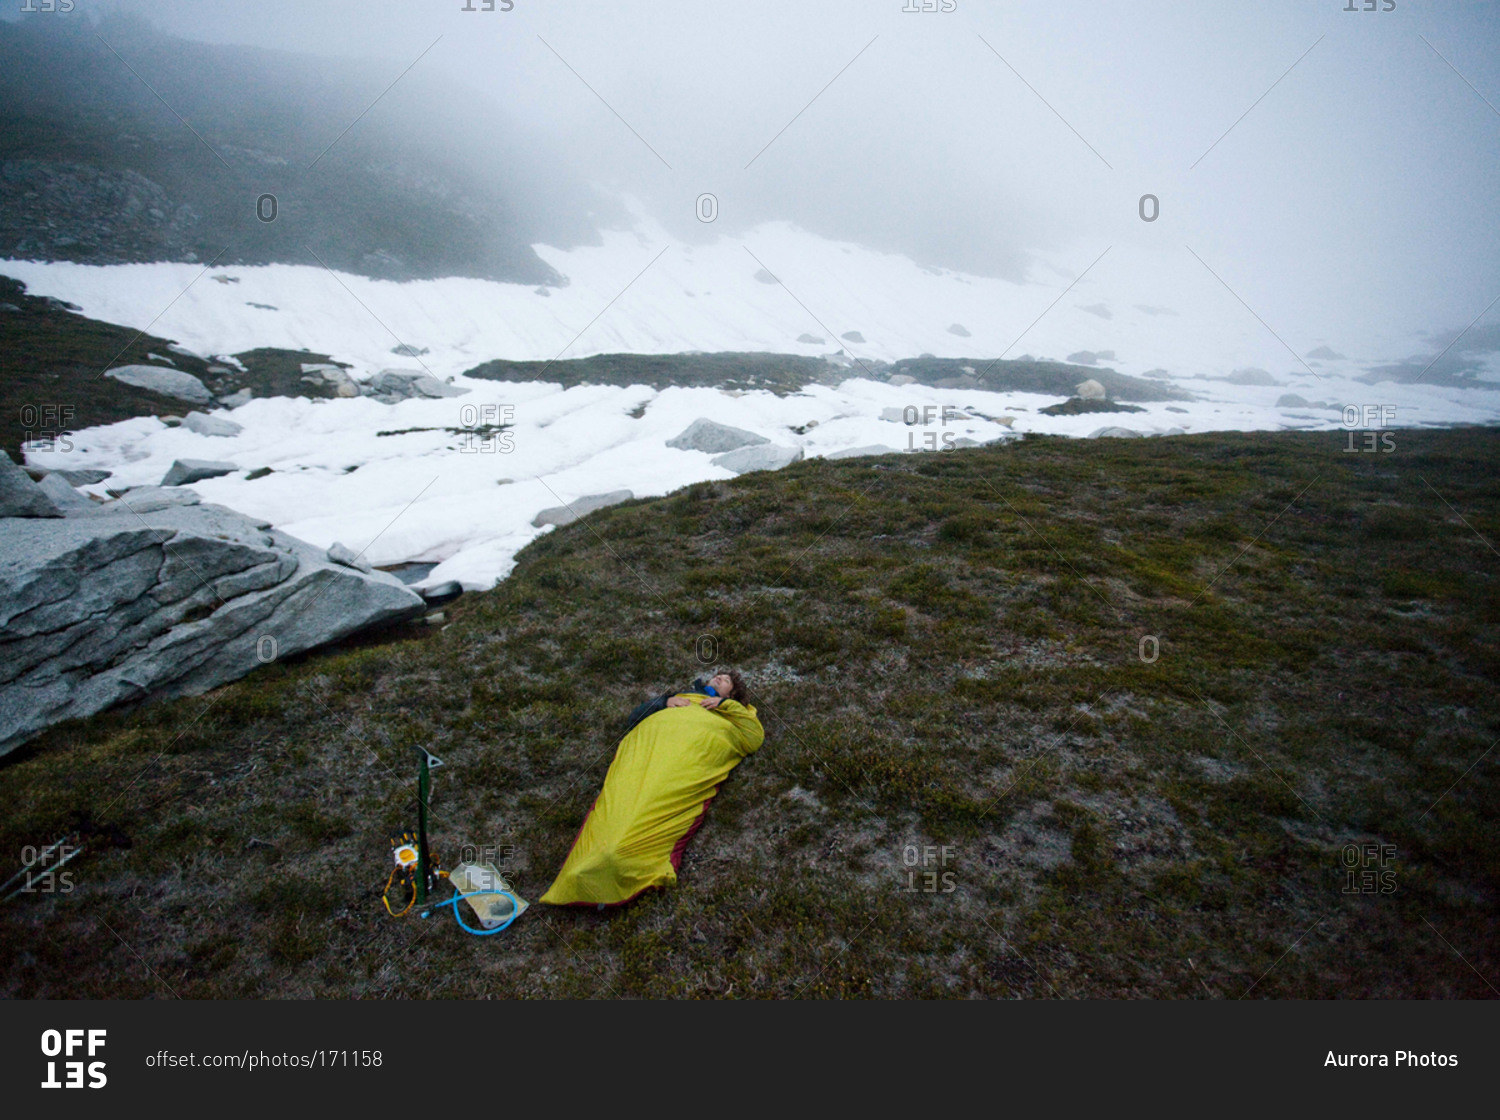 A climber sleeps outside in a bivy sack underneath a cloudy sky